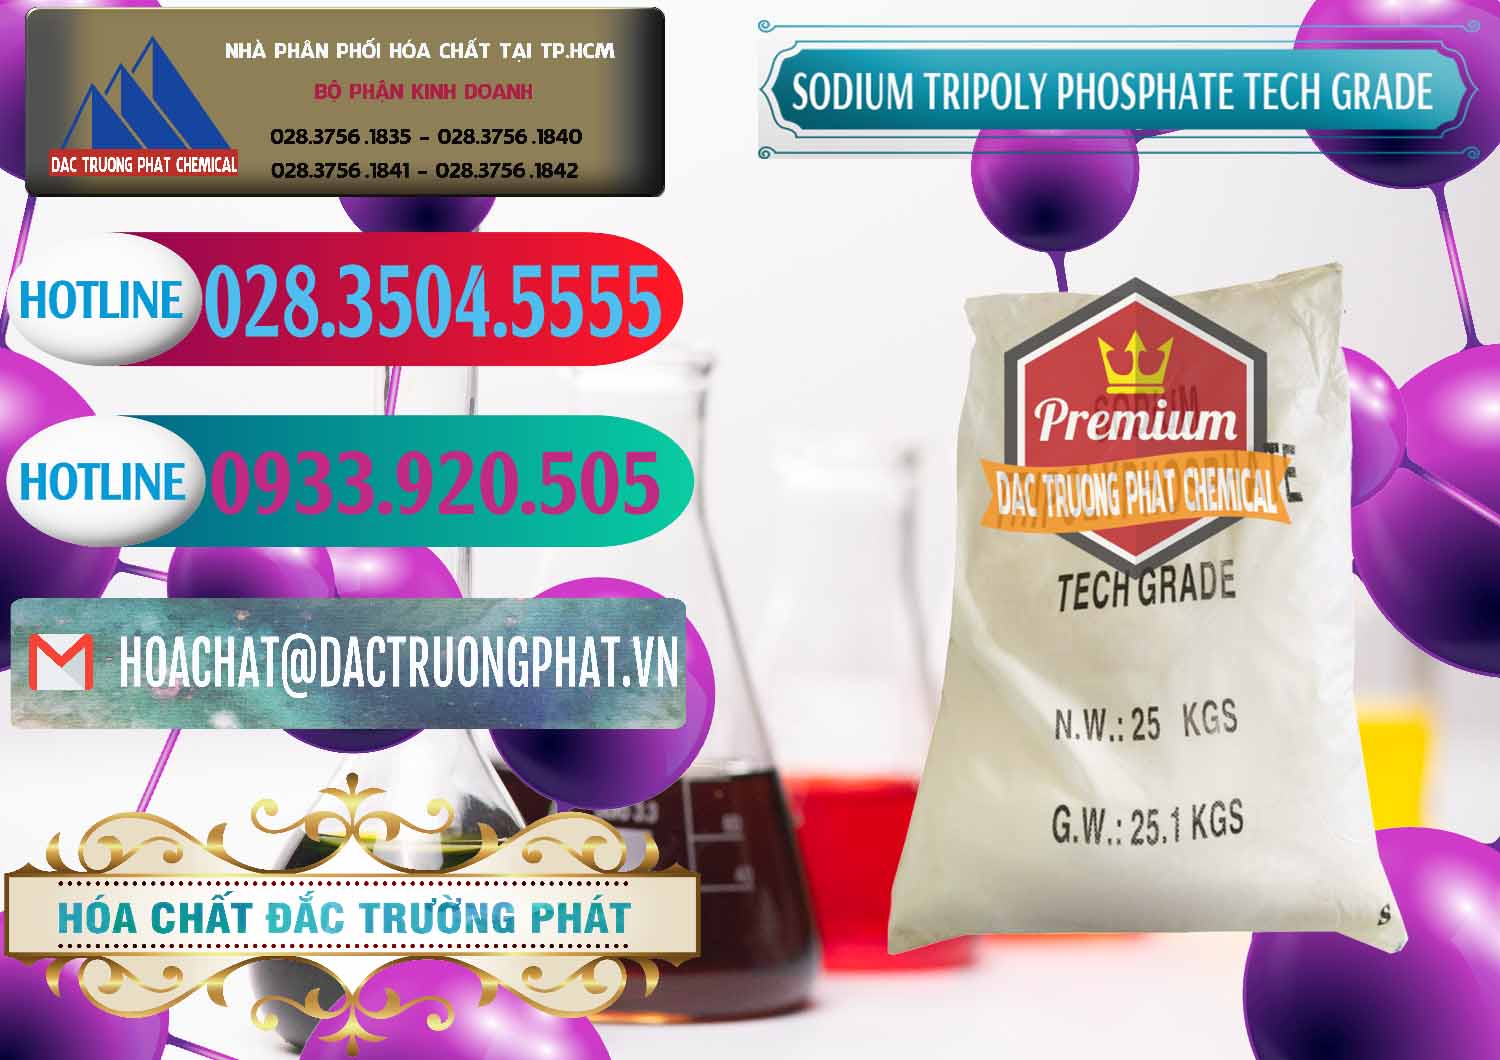 Cty chuyên cung ứng và bán Sodium Tripoly Phosphate - STPP Tech Grade Trung Quốc China - 0453 - Nơi phân phối & bán hóa chất tại TP.HCM - truongphat.vn